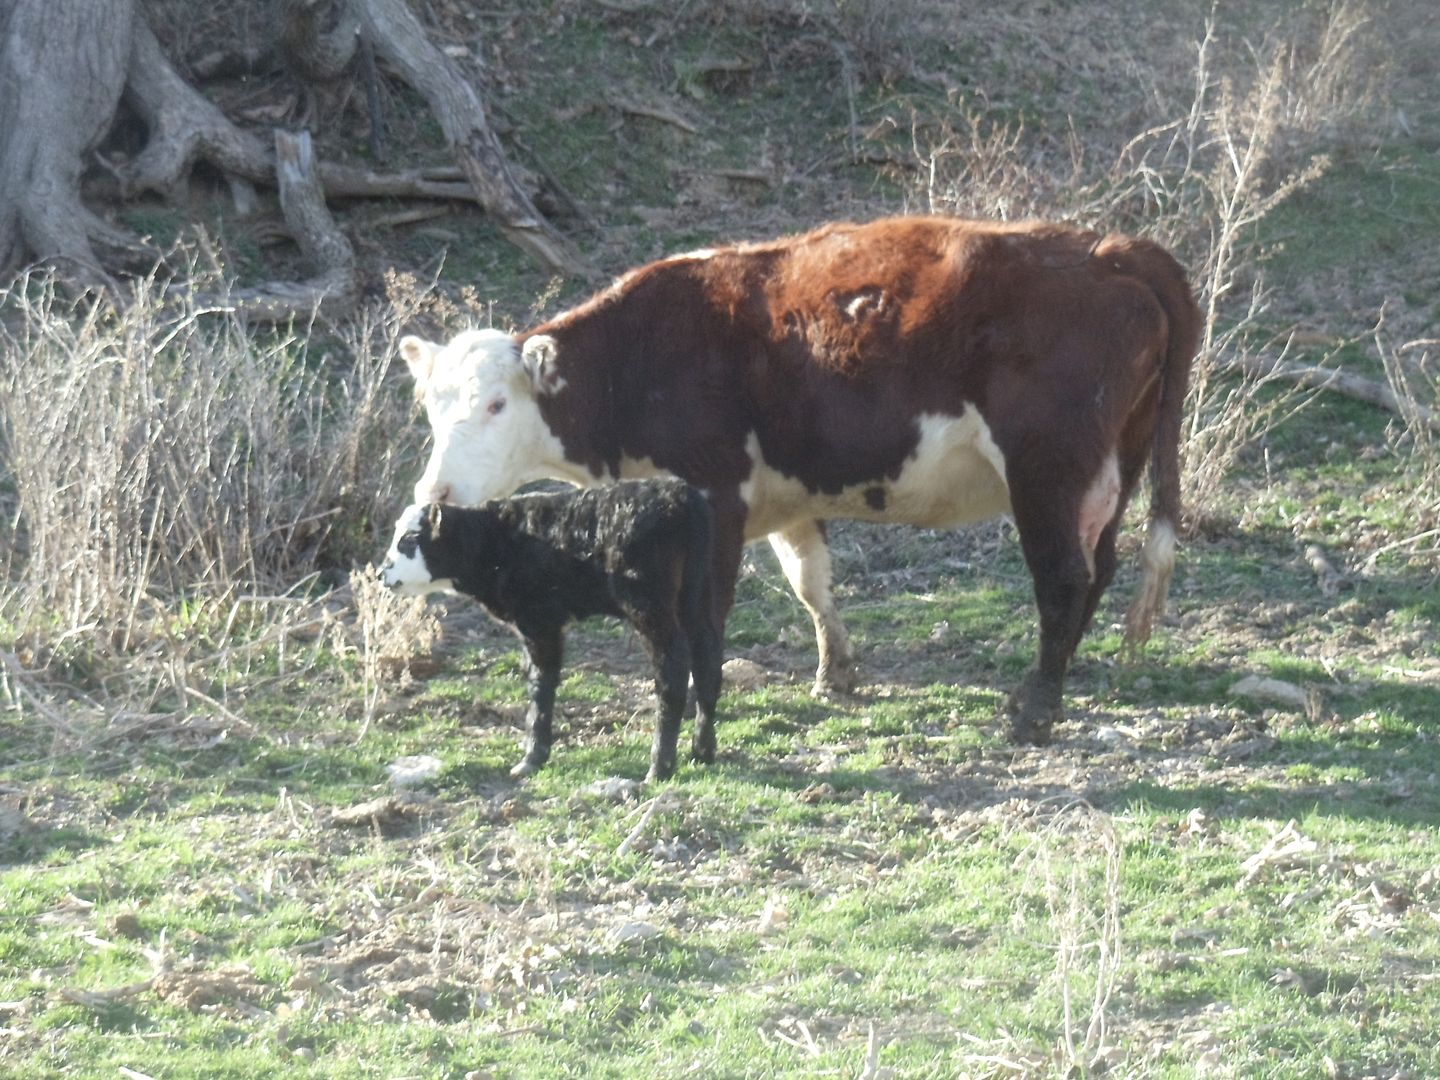  photo cows calves 001.jpg